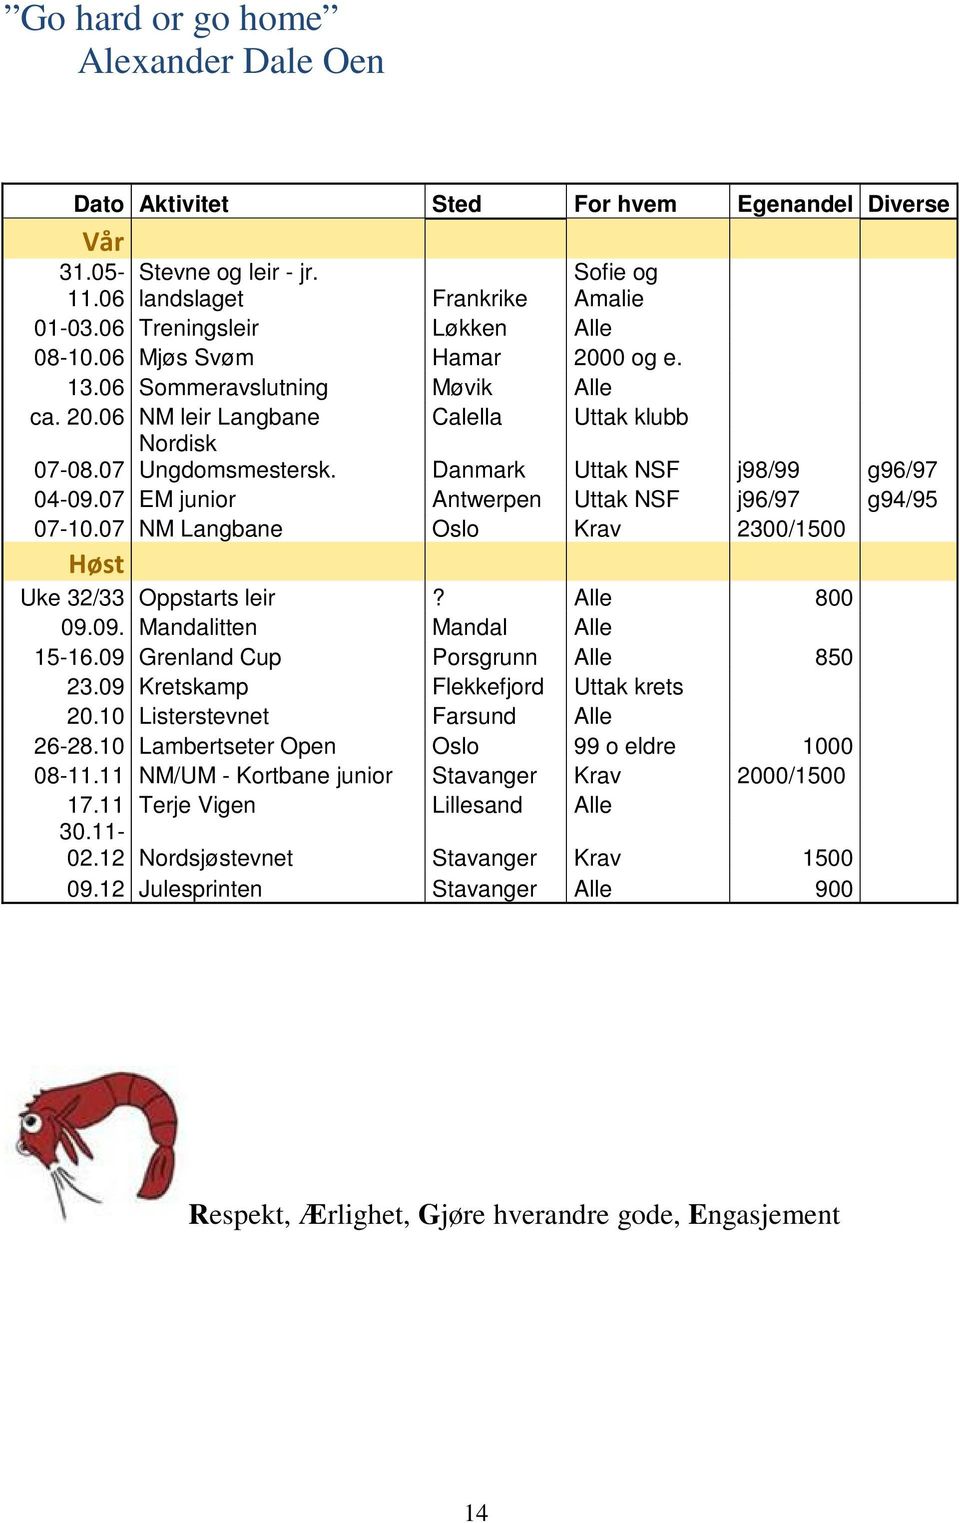 07 EM junior Antwerpen Uttak NSF j96/97 g94/95 07-10.07 NM Langbane Oslo Krav 2300/1500 Høst Uke 32/33 Oppstarts leir? Alle 800 09.09. Mandalitten Mandal Alle 15-16.